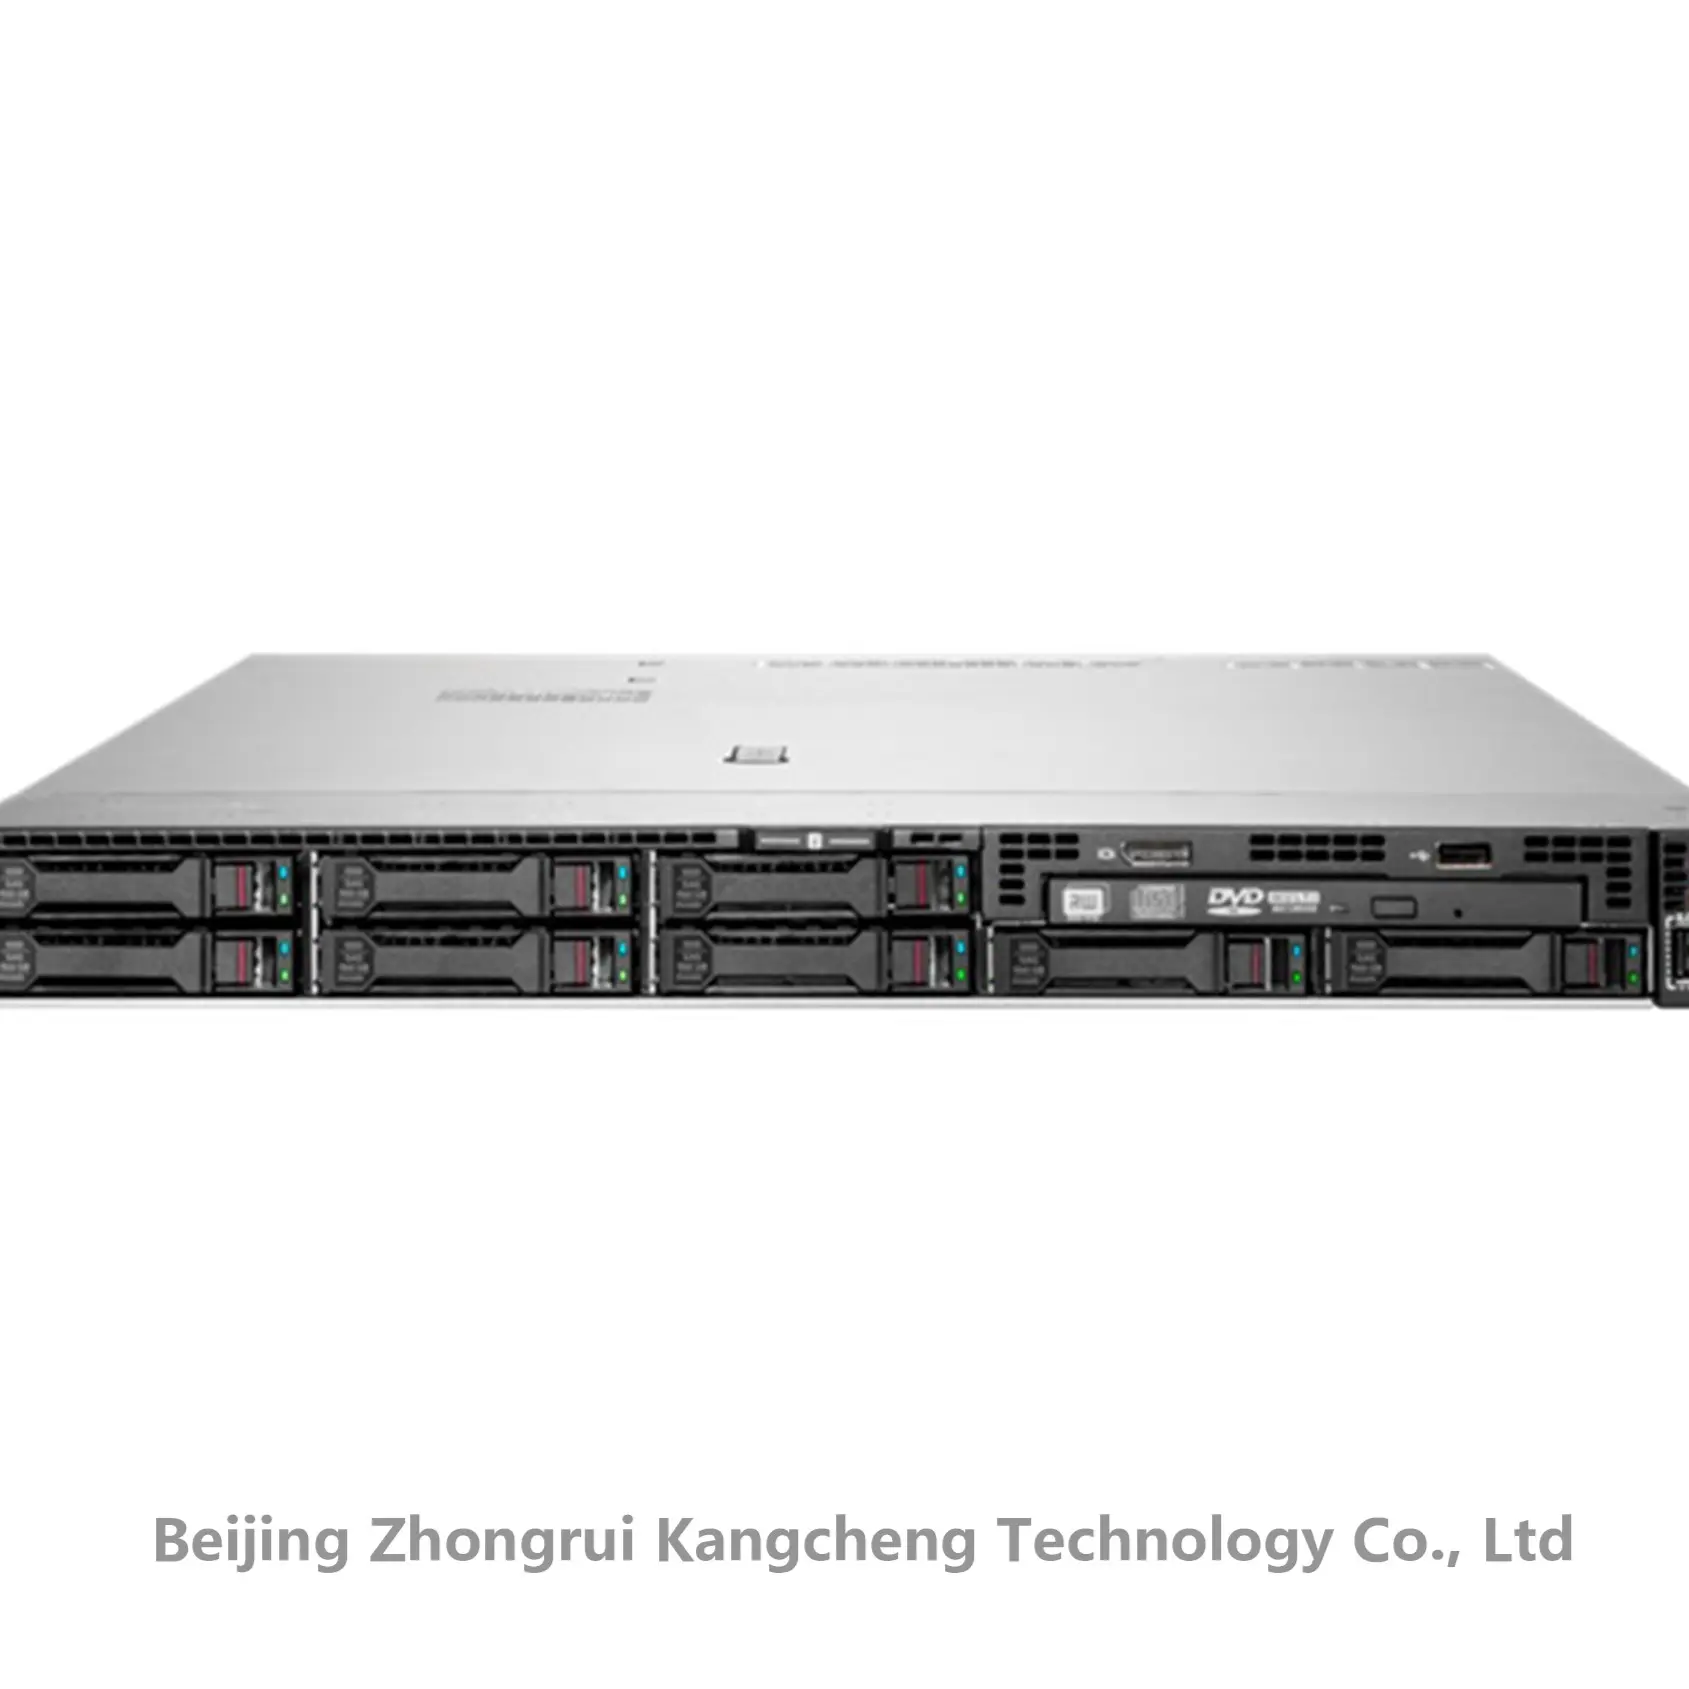 एचपीई प्रोलियंट डीएल360 जेन11 के लिए गर्म बिक्री, एचपी सर्वर के लिए नवीनीकृत सर्वर का उपयोग किया गया